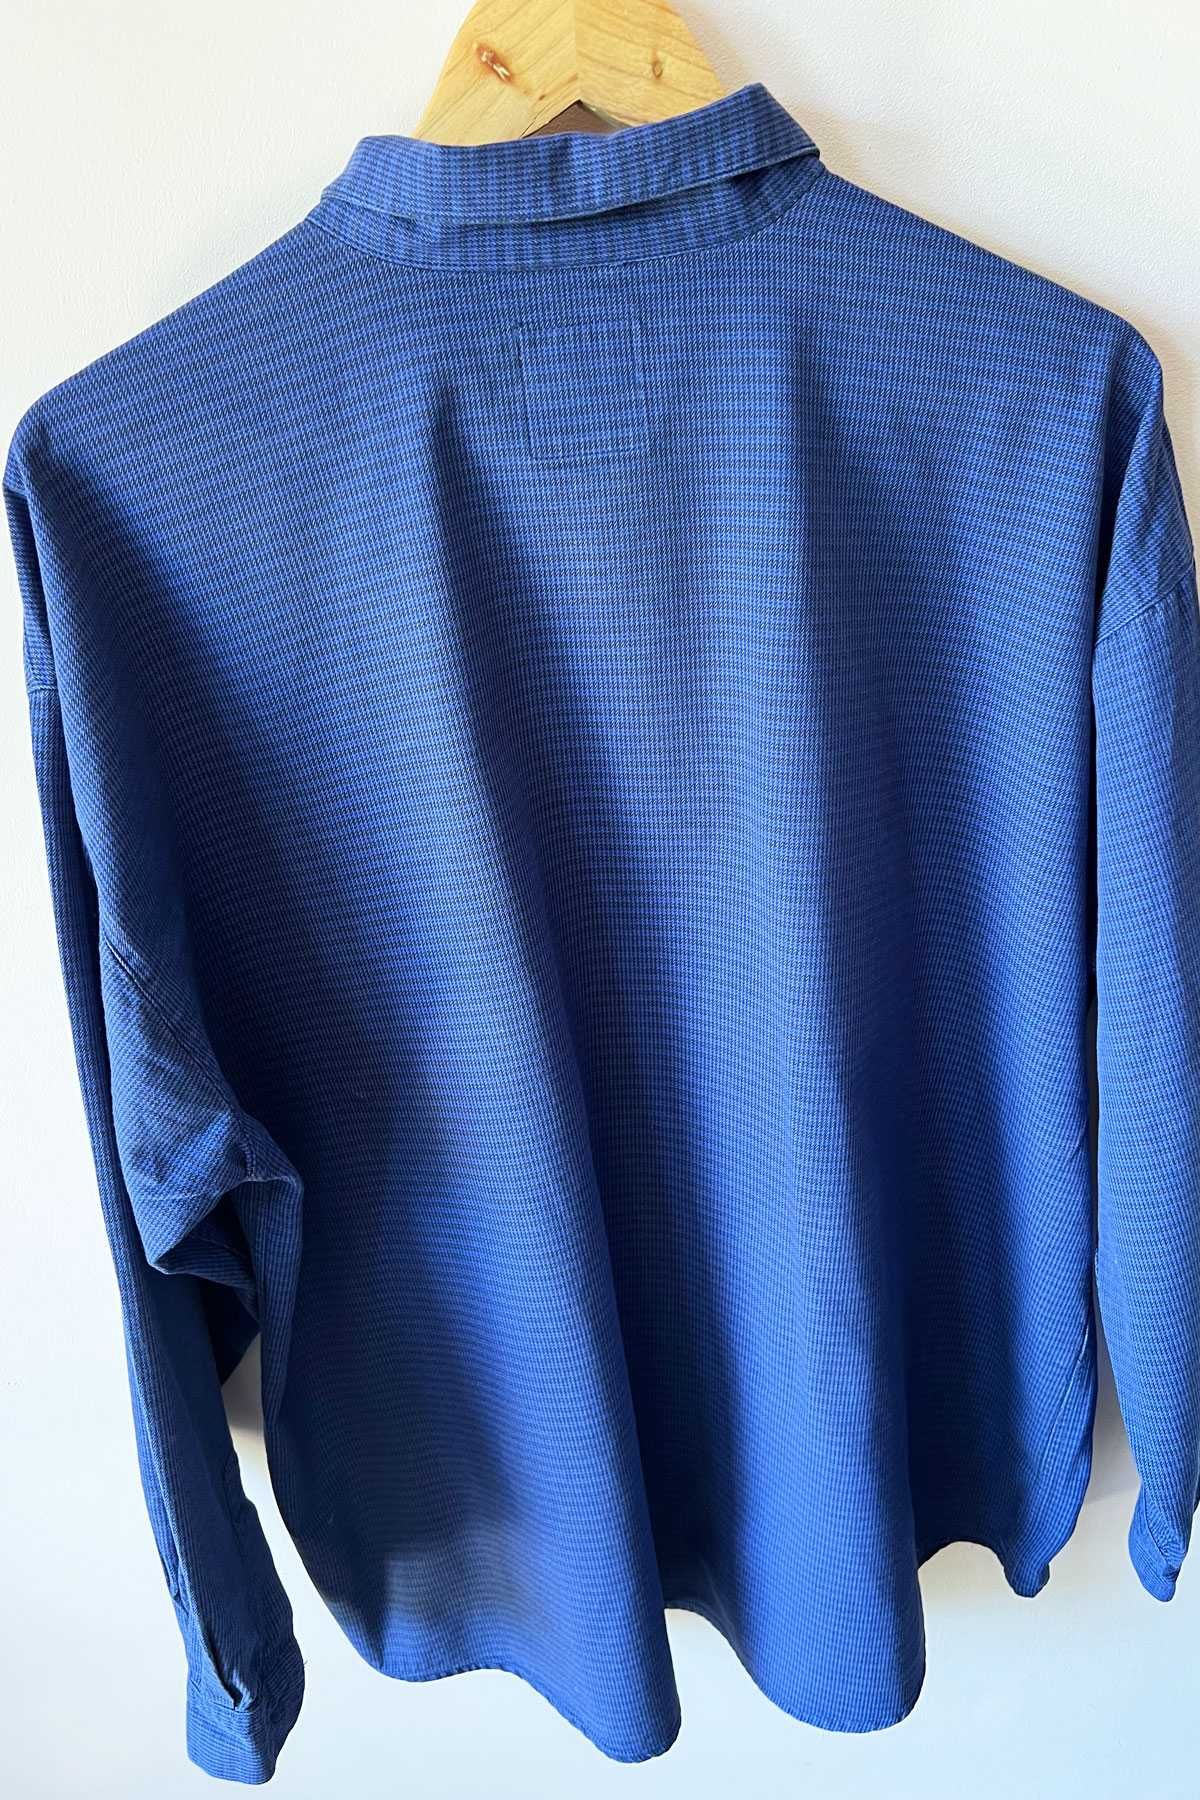 Diesel niebieska koszula w kratkę długi rękaw bawełna rozm. XL vintage